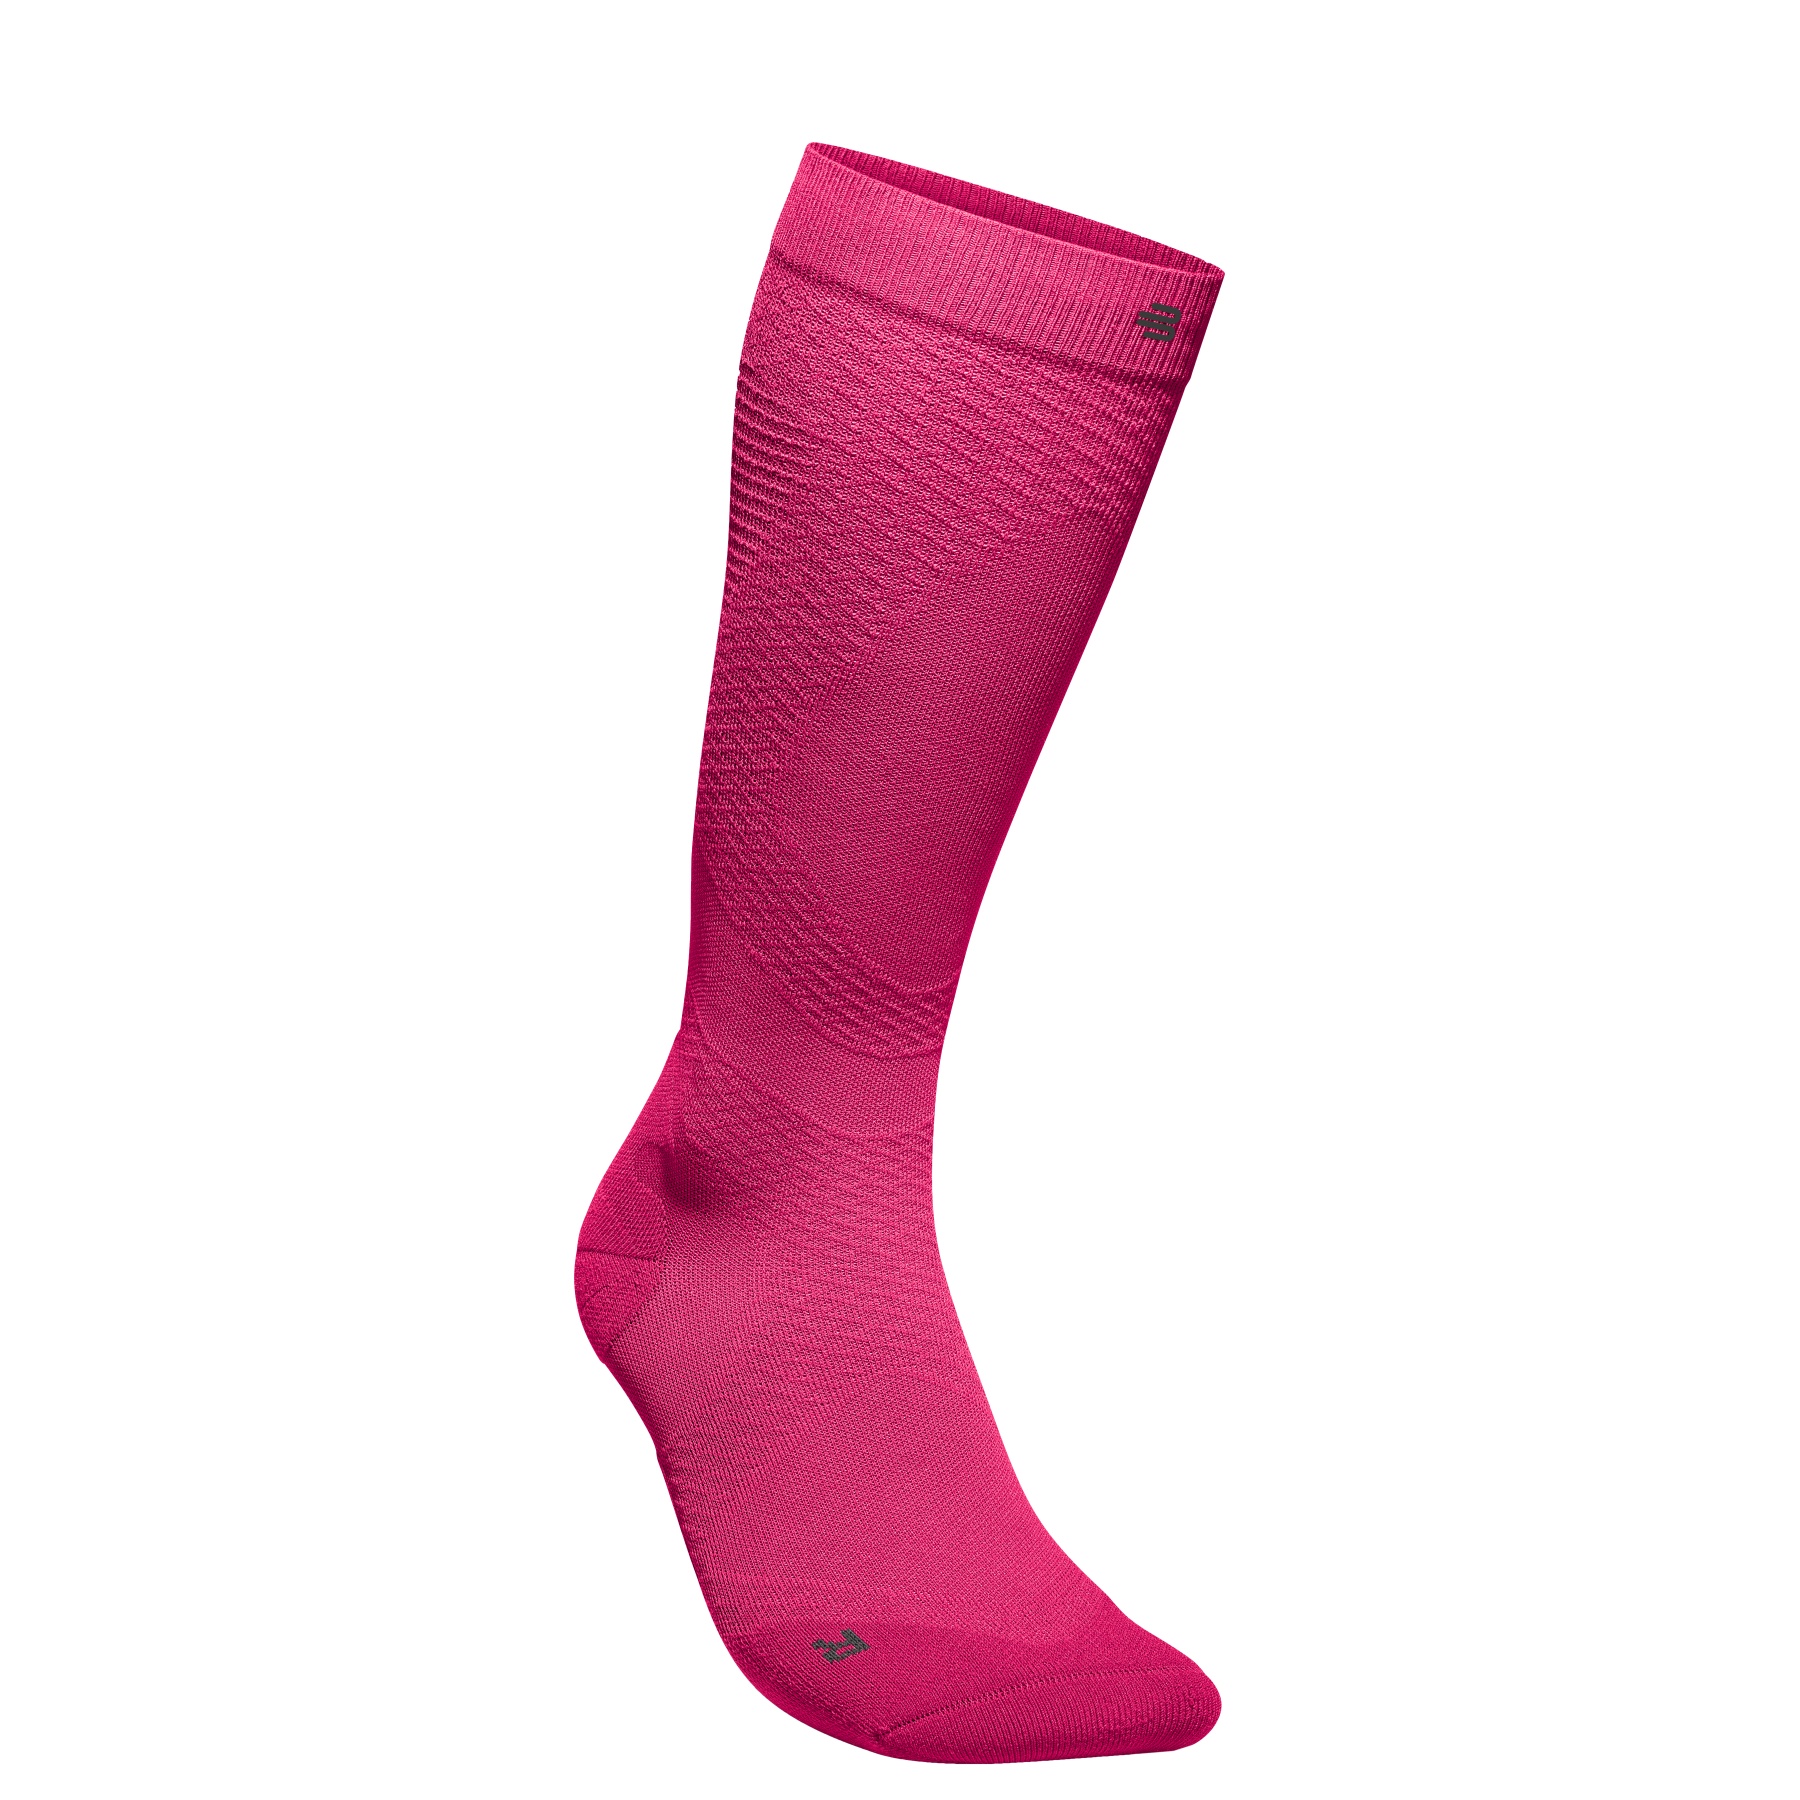 Produktbild von Bauerfeind Run Ultralight Kompressionssocken Herren - pitaya pink - S (31-36 cm)